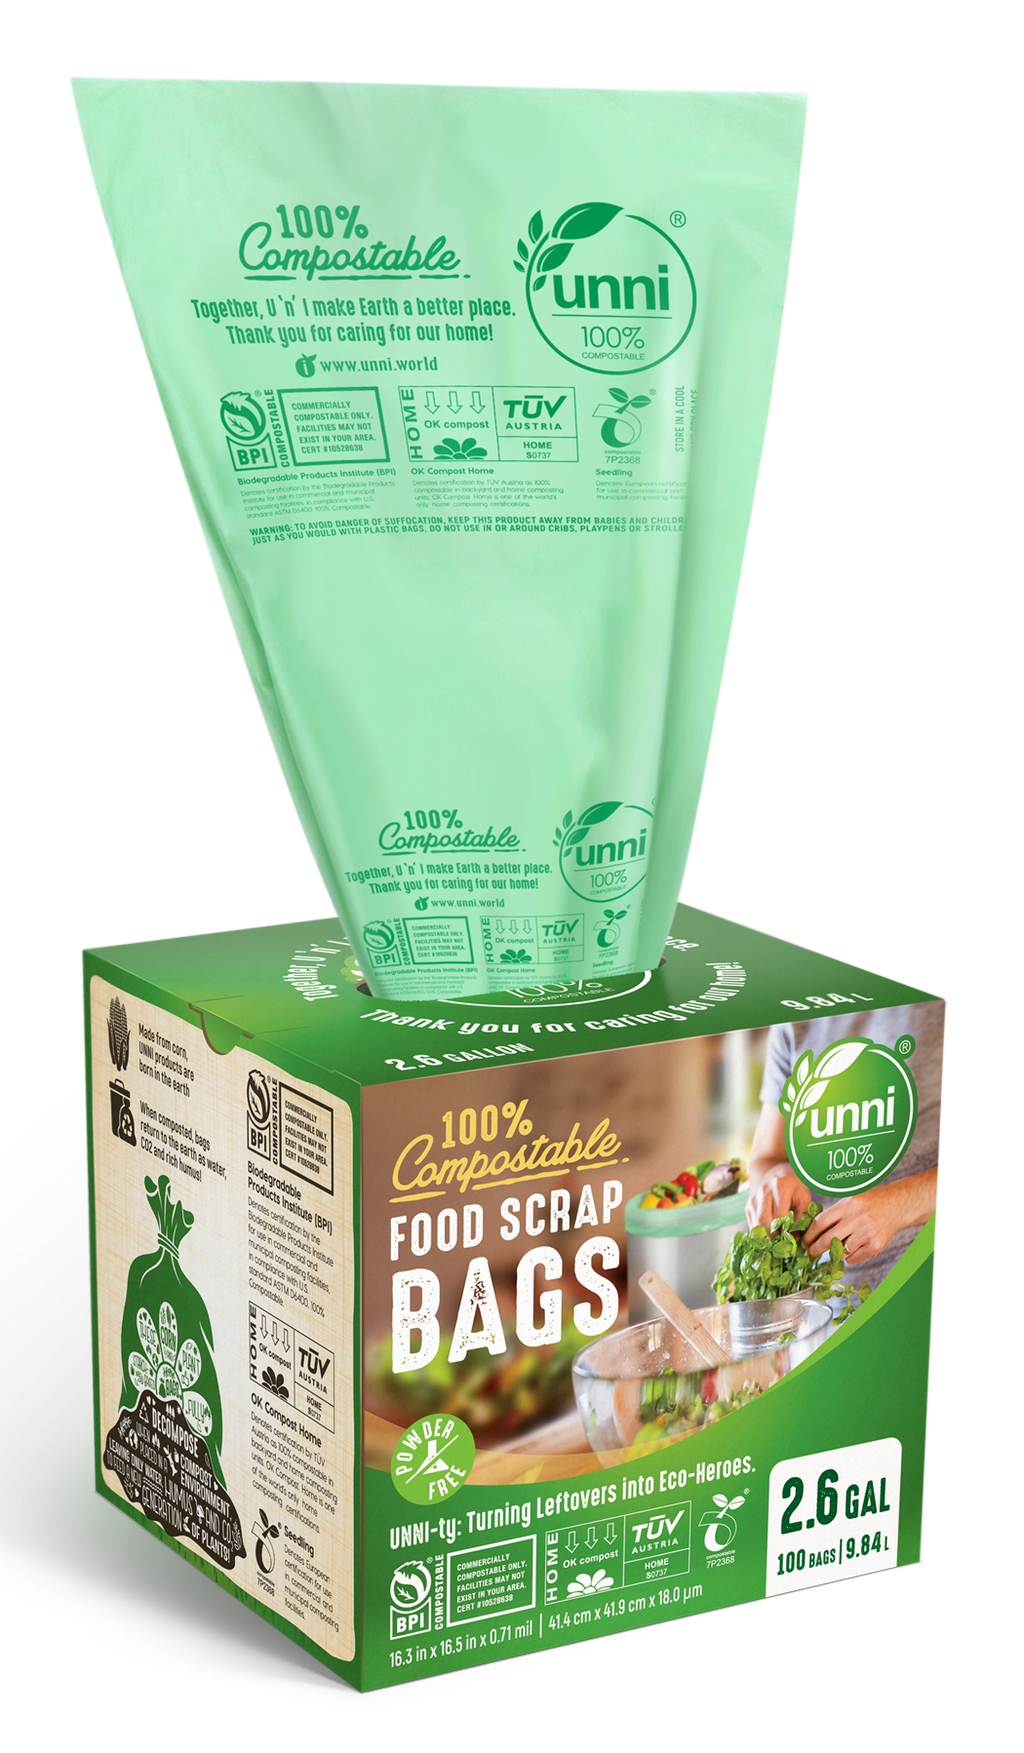 Supermercados Econo ofrece bolsas compostables – Sabrosia